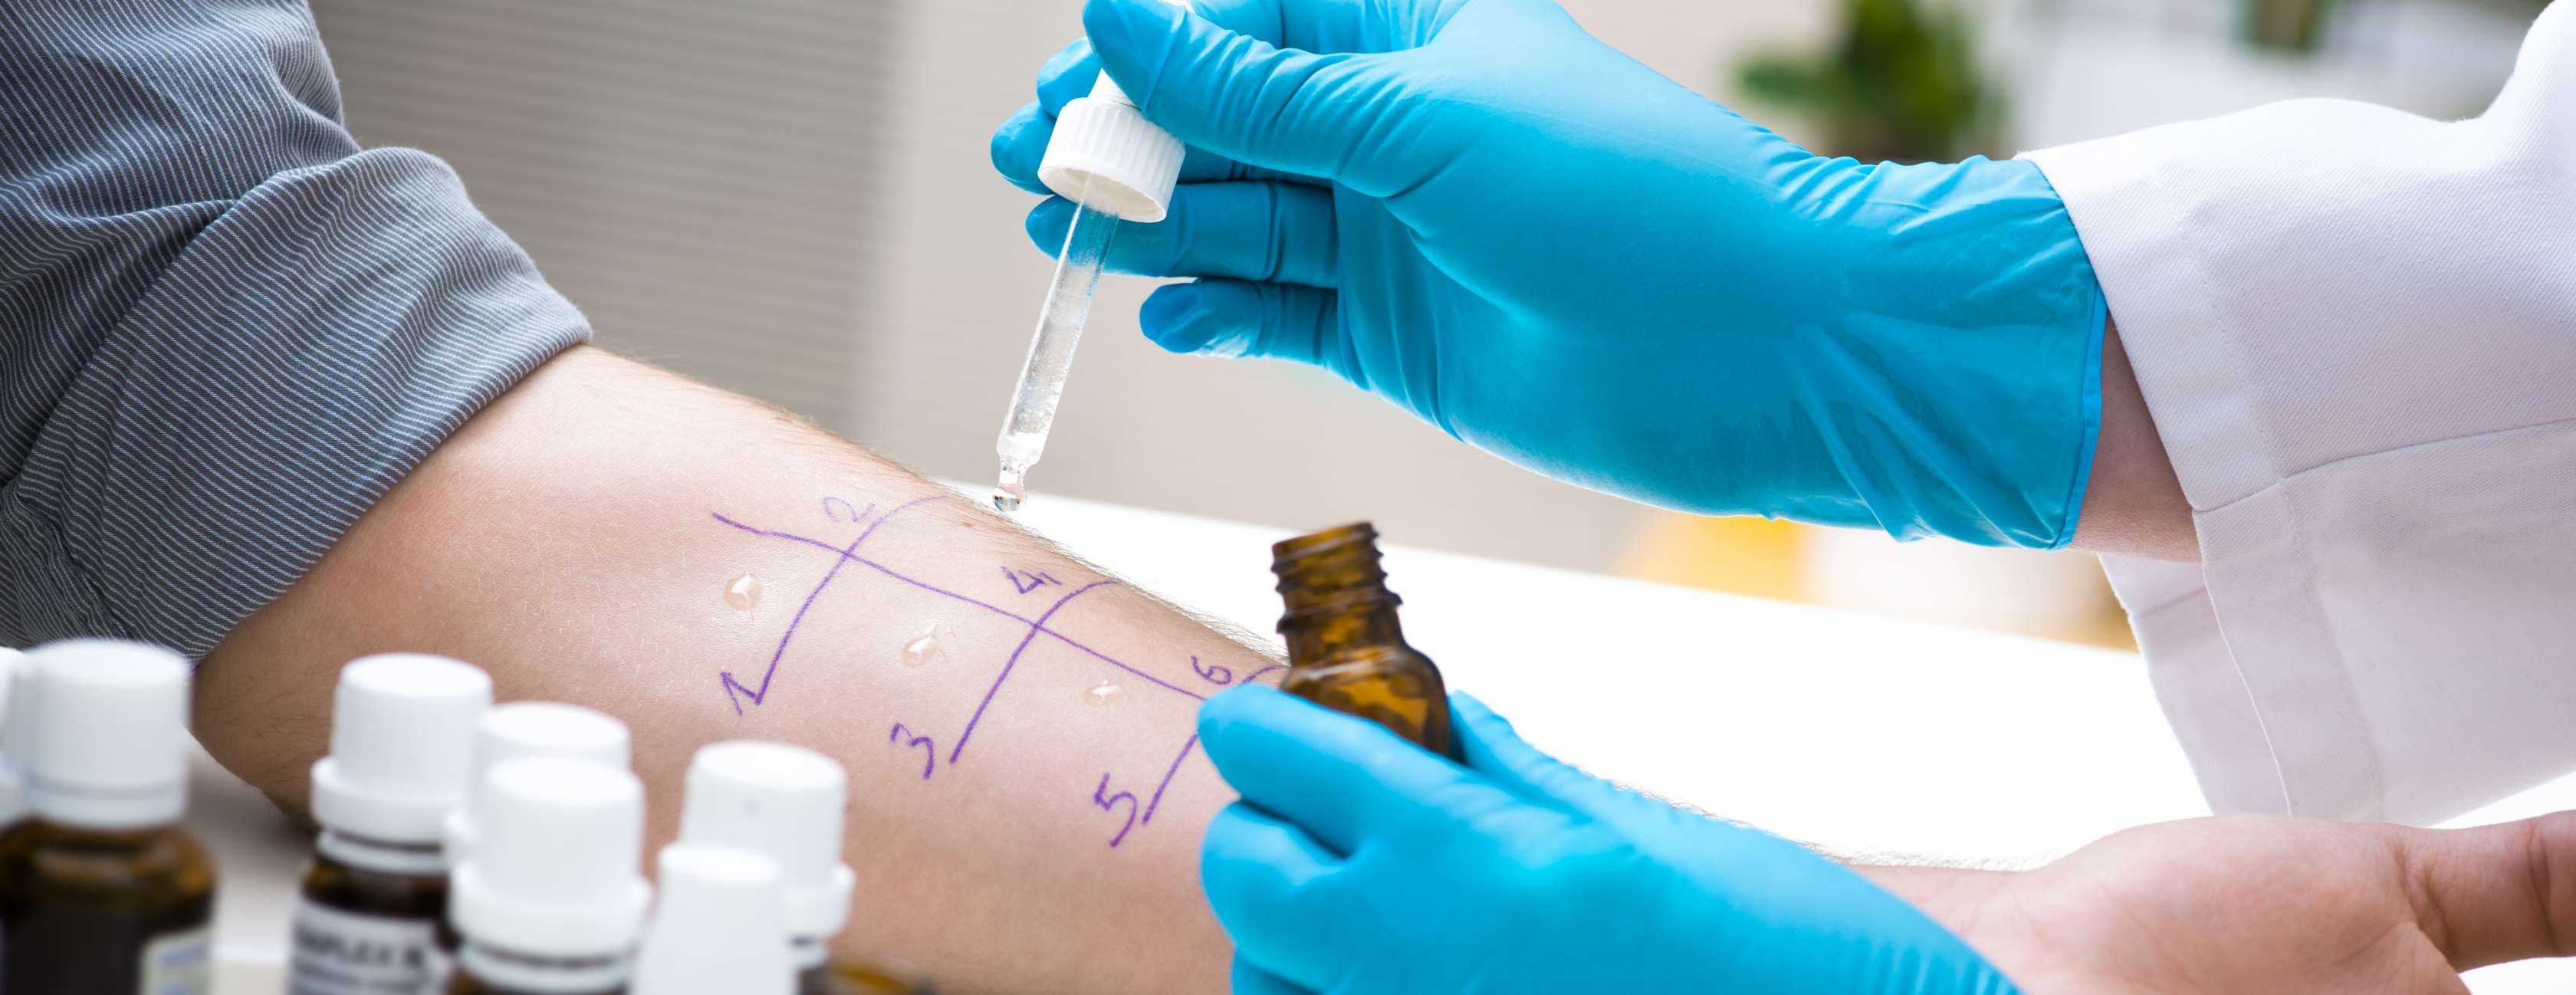 Allianz - Mit einem Prick-Test am Unterarm lassen sich Allergien erkennen